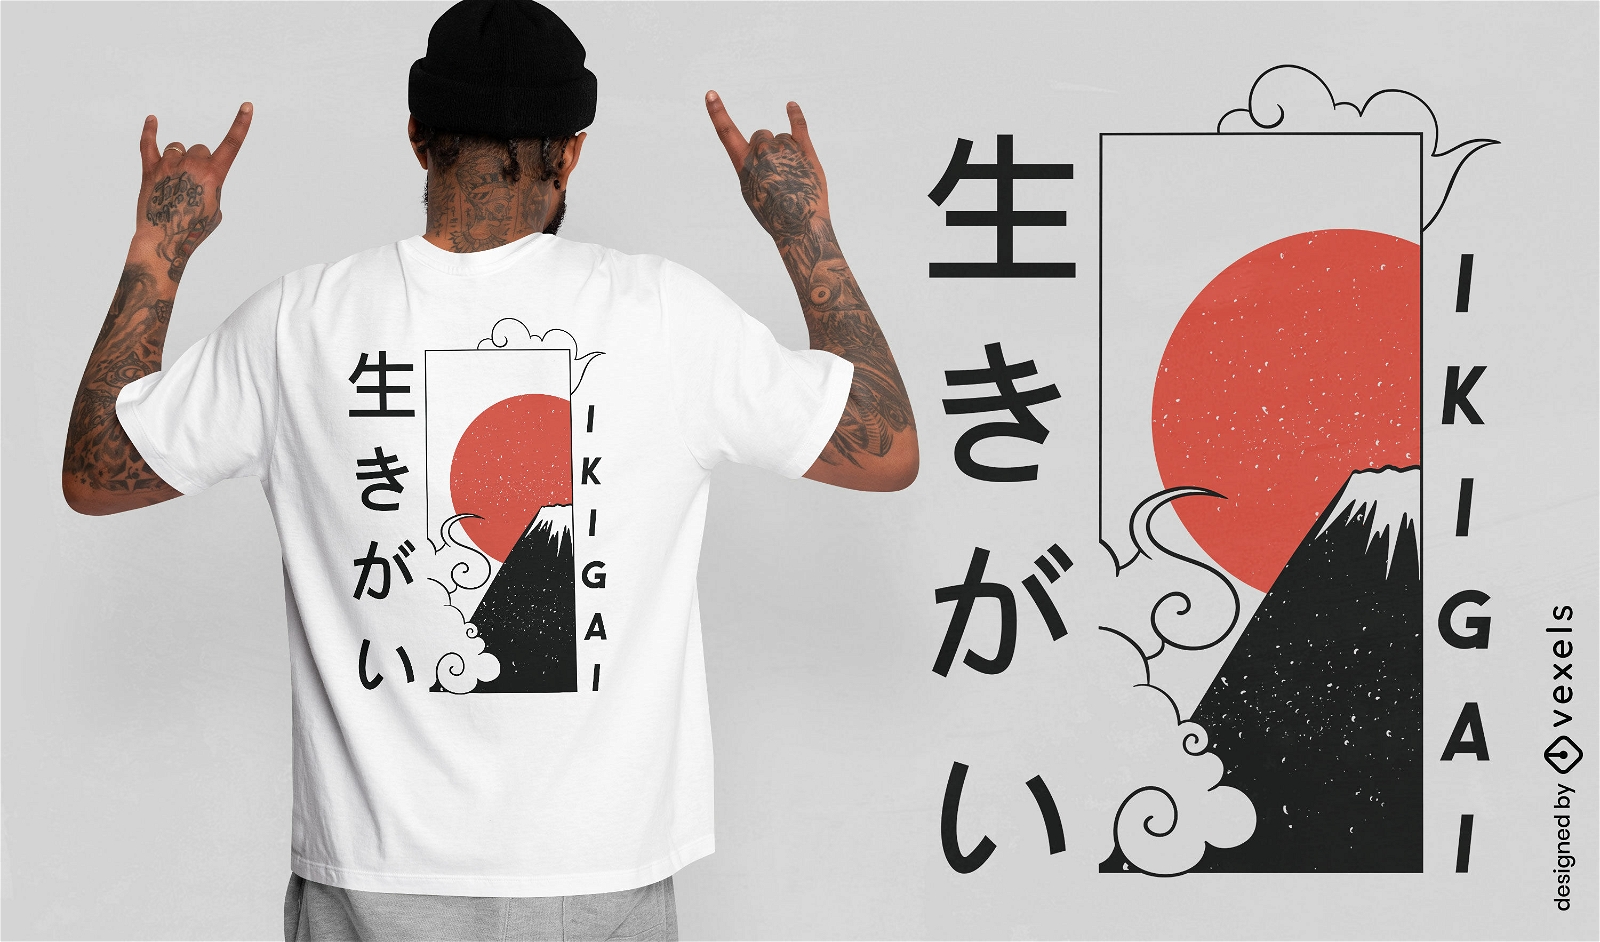 Ikigai Japanese quote t-shirt desing